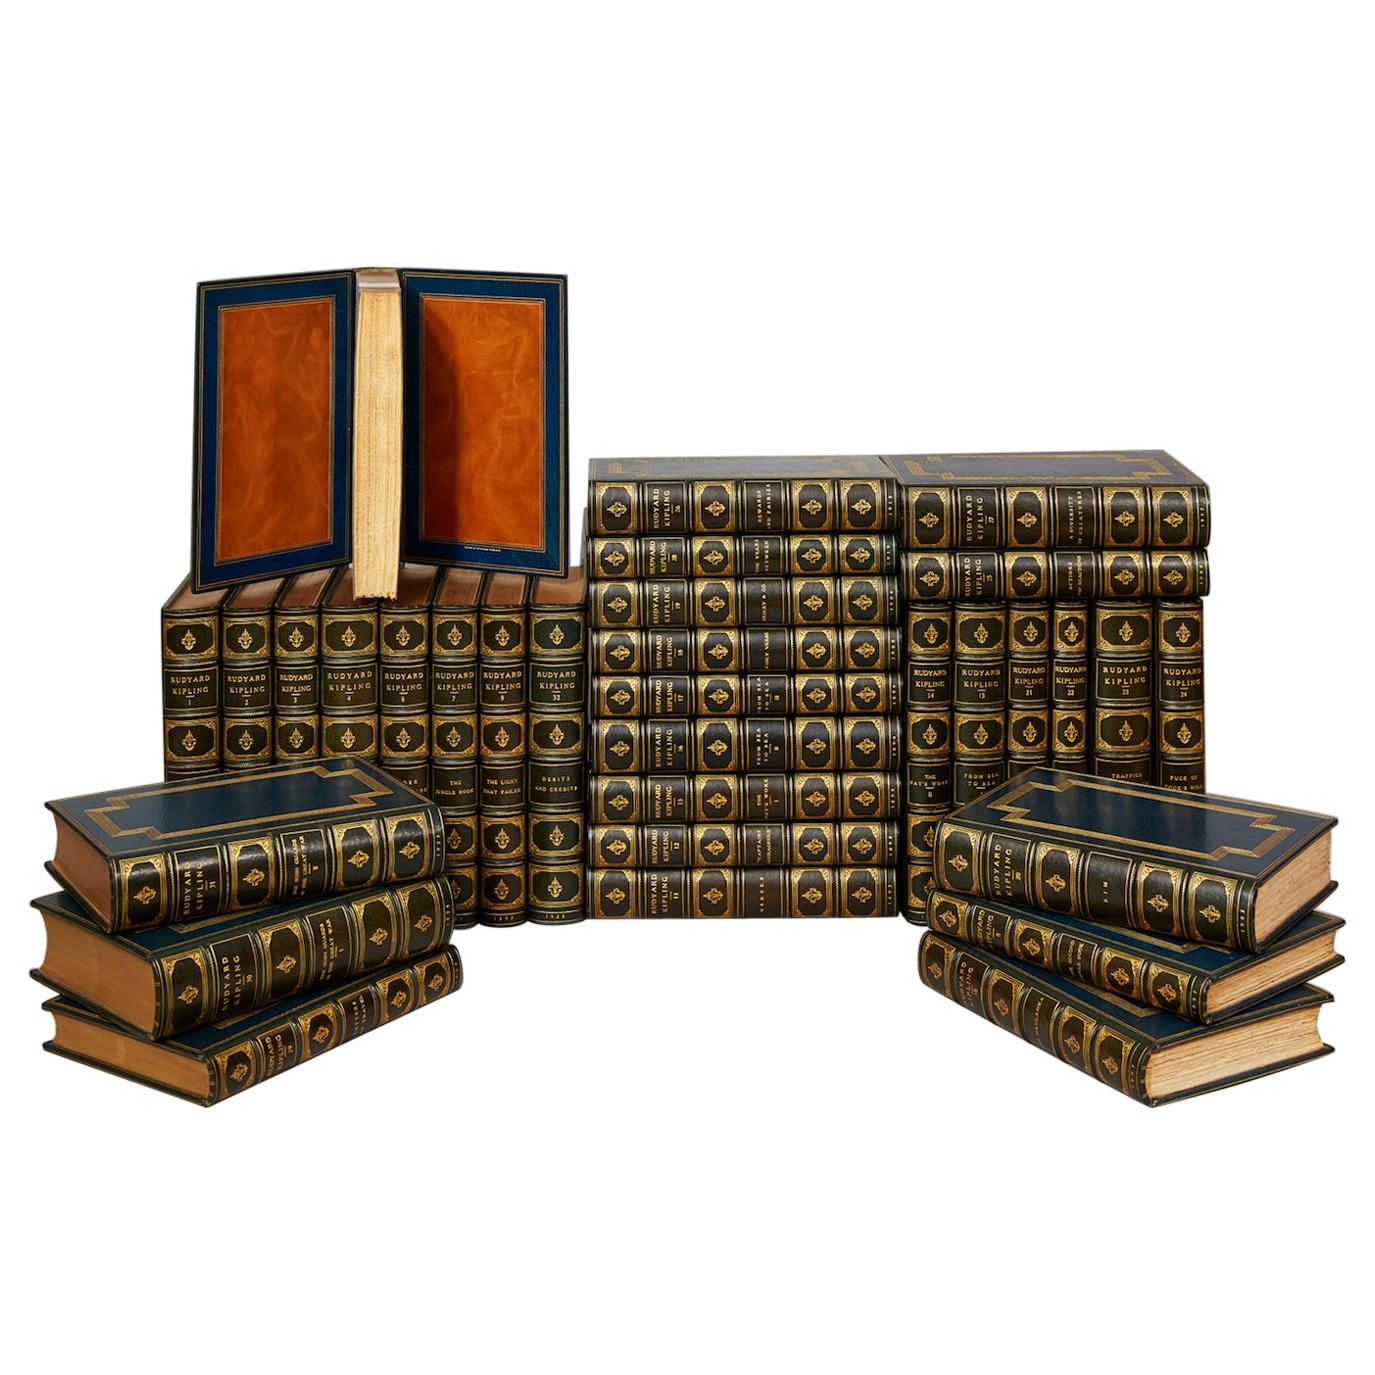 Books, "The Works of Rudyard Kipling"